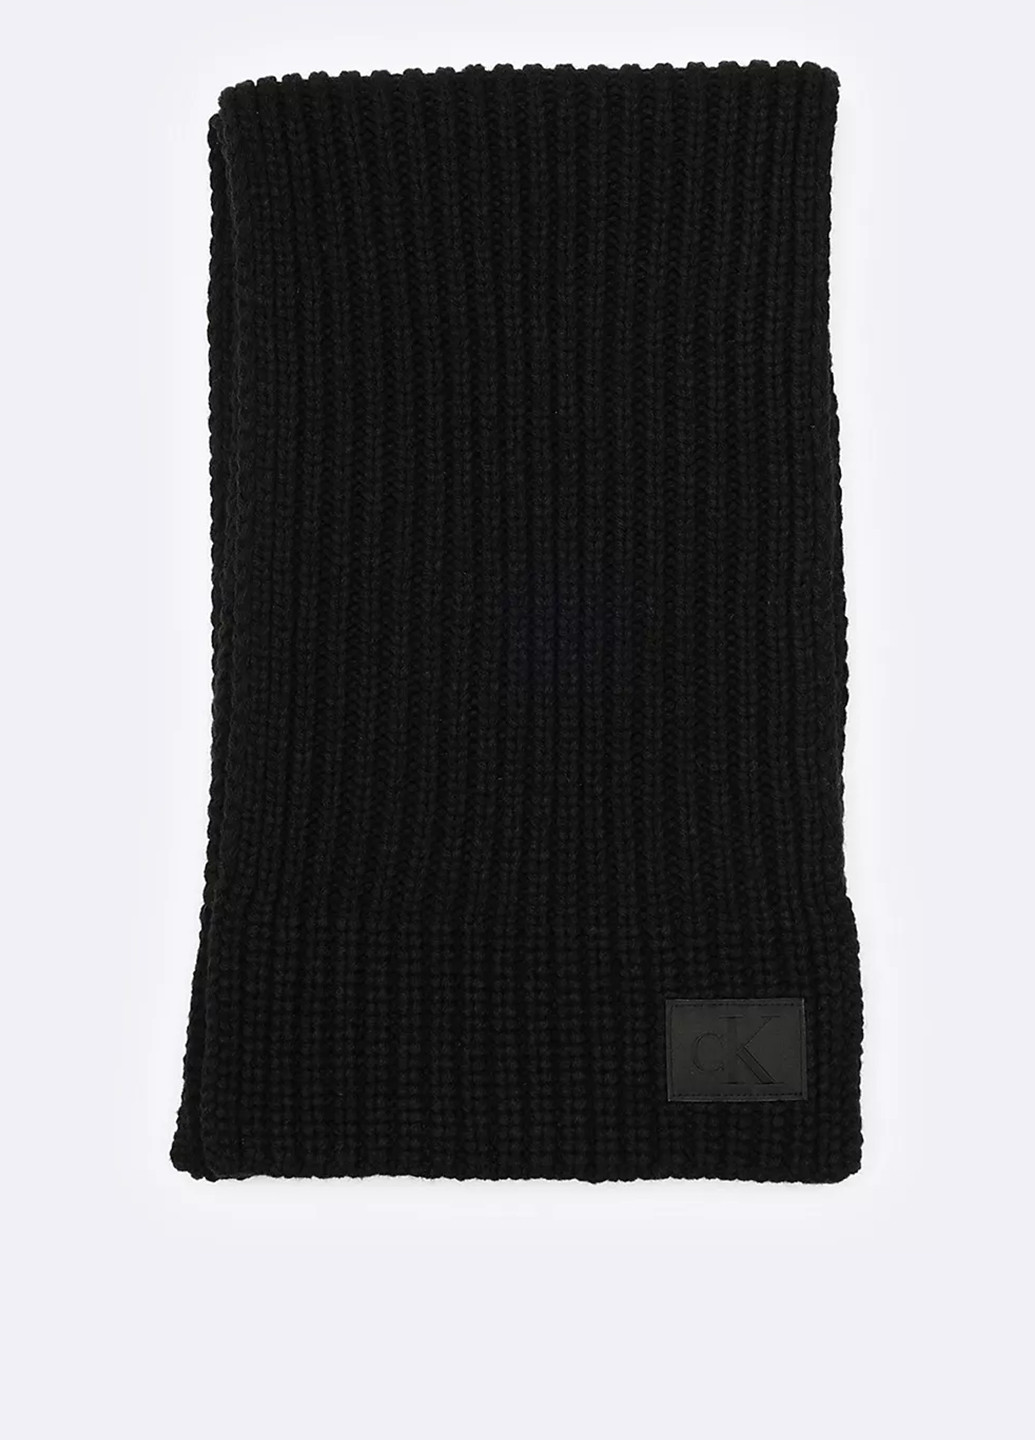 Черный демисезонный комплект (шарф, перчатки) Calvin Klein